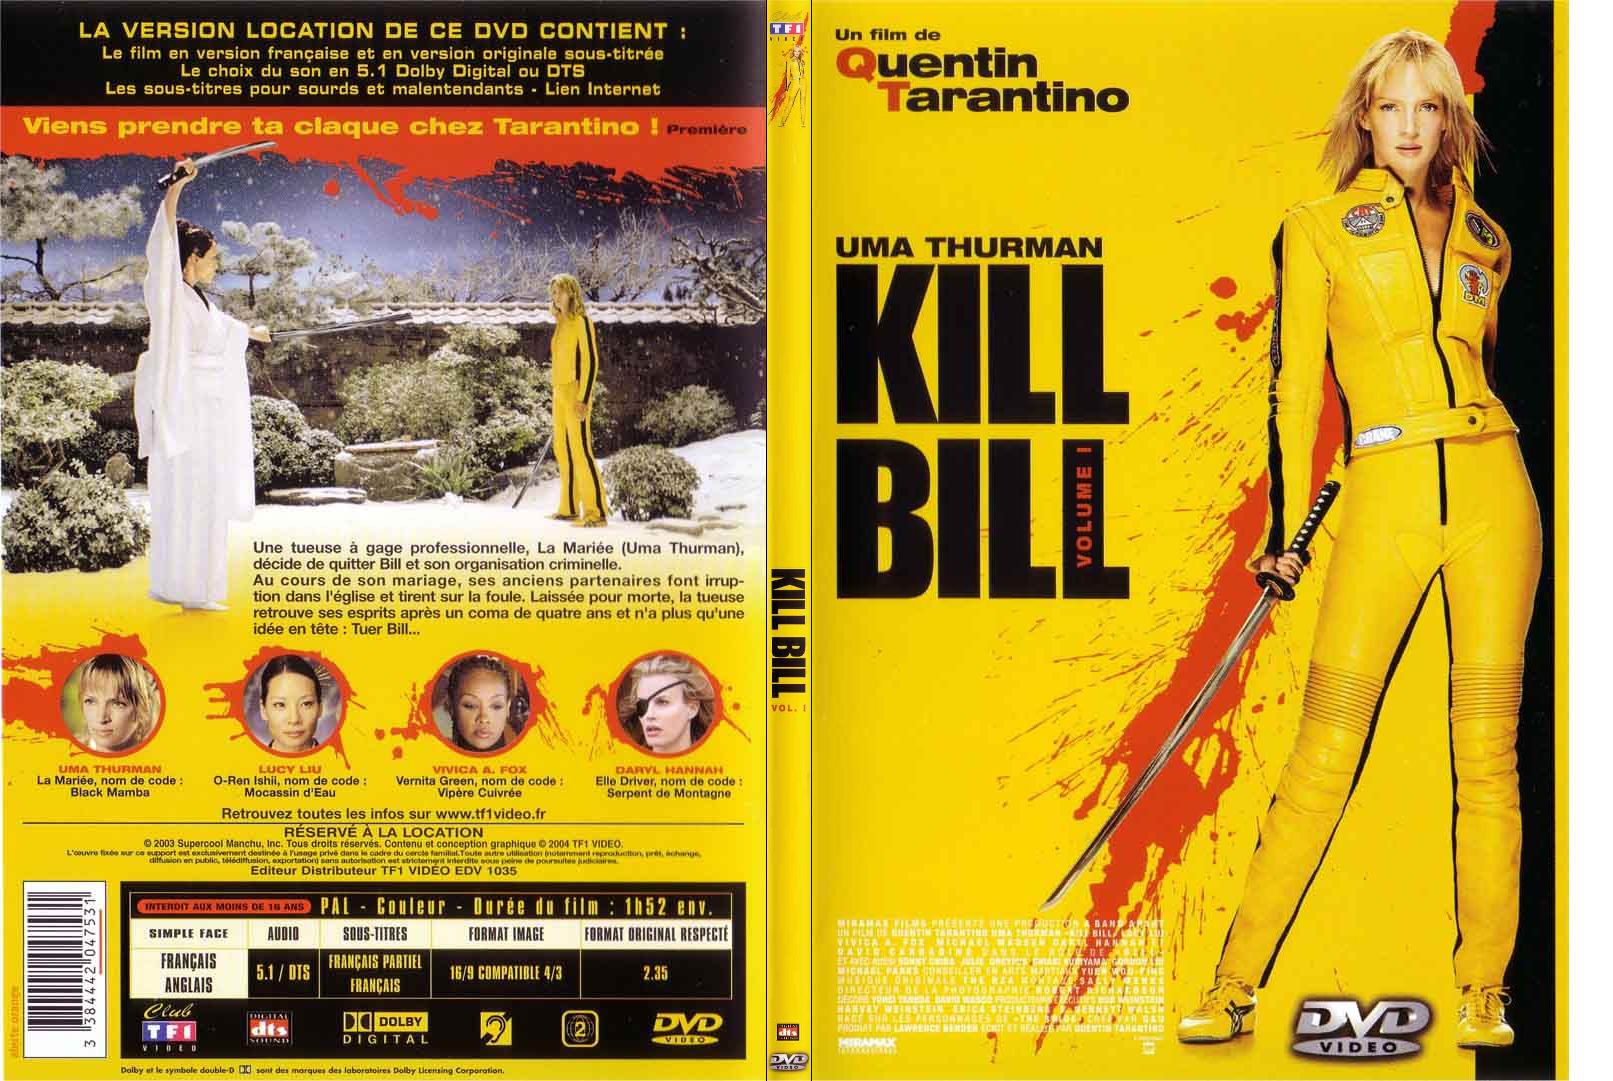 Jaquette DVD Kill bill vol 1 - SLIM v2